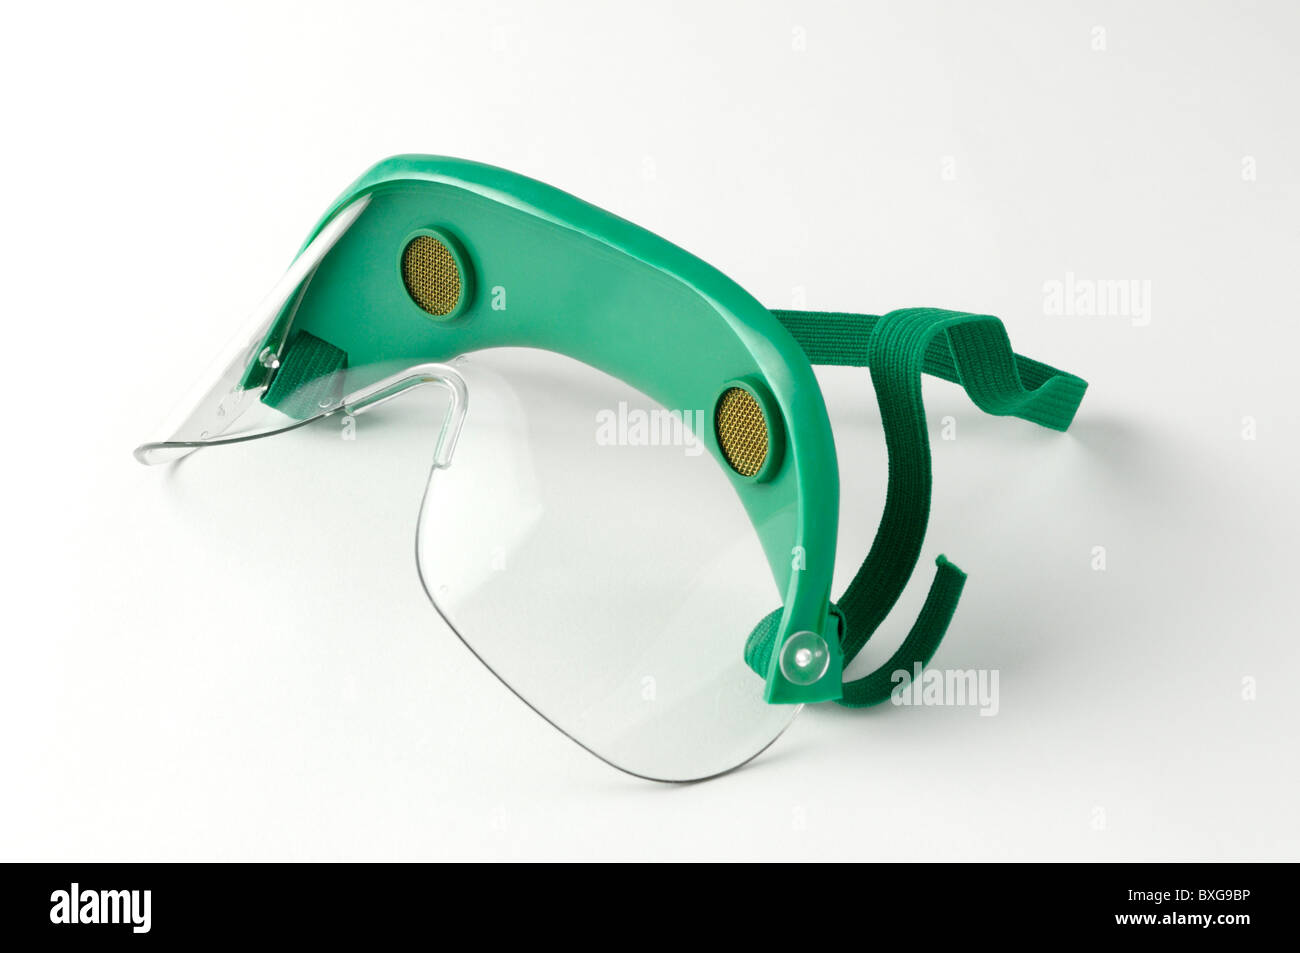 Chimica gli occhiali di sicurezza per l'uso in laboratori di ricerca e corsi di scienze Foto Stock